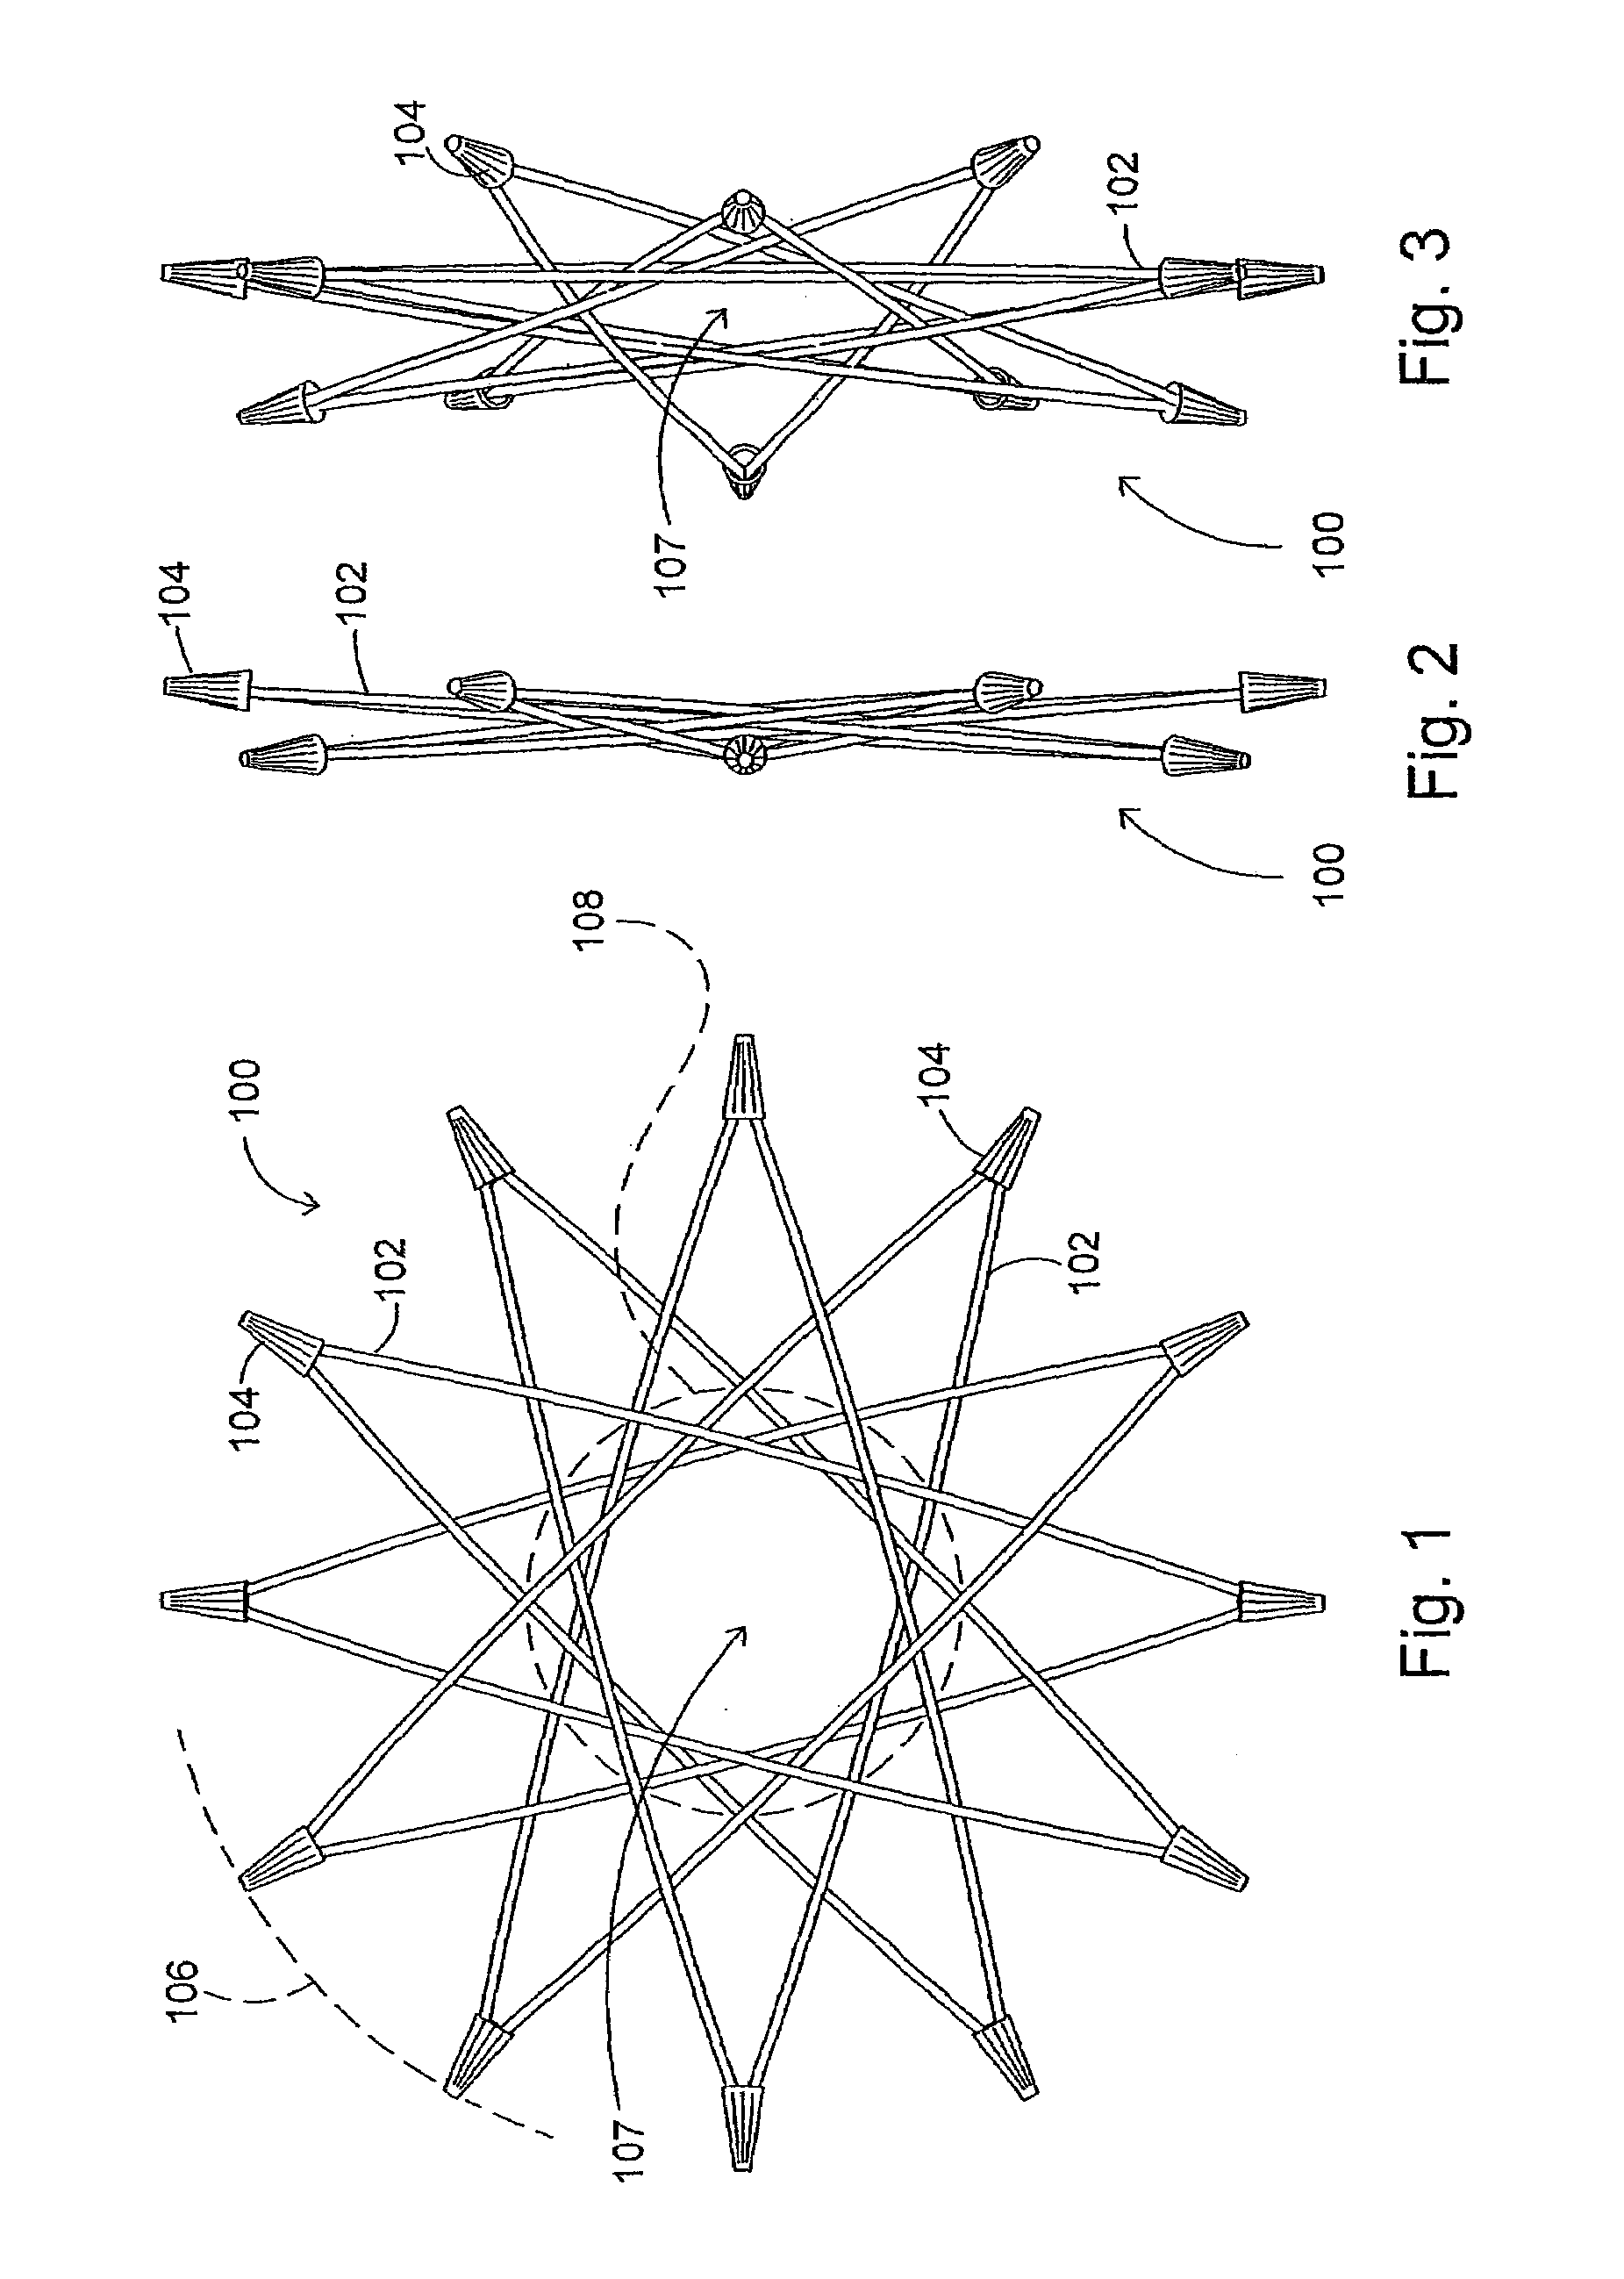 Radial-hinge mechanism